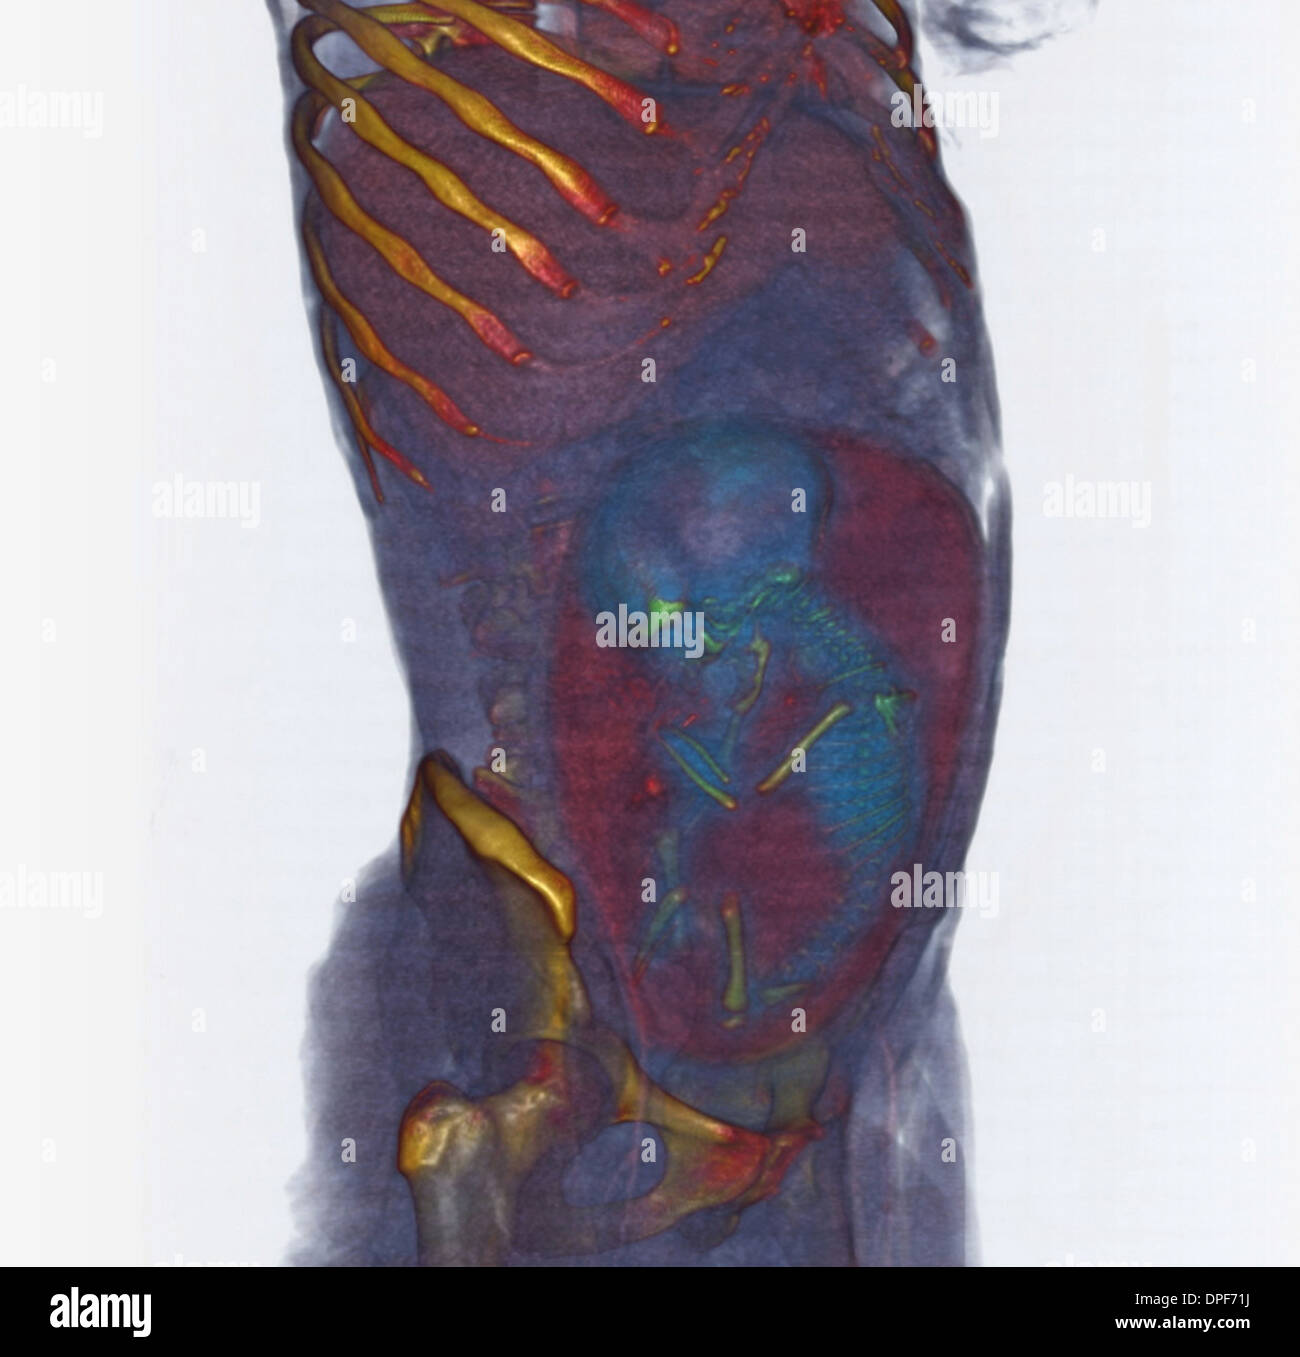 CT scan of abdomen showing 36 week old fetus Stock Photo